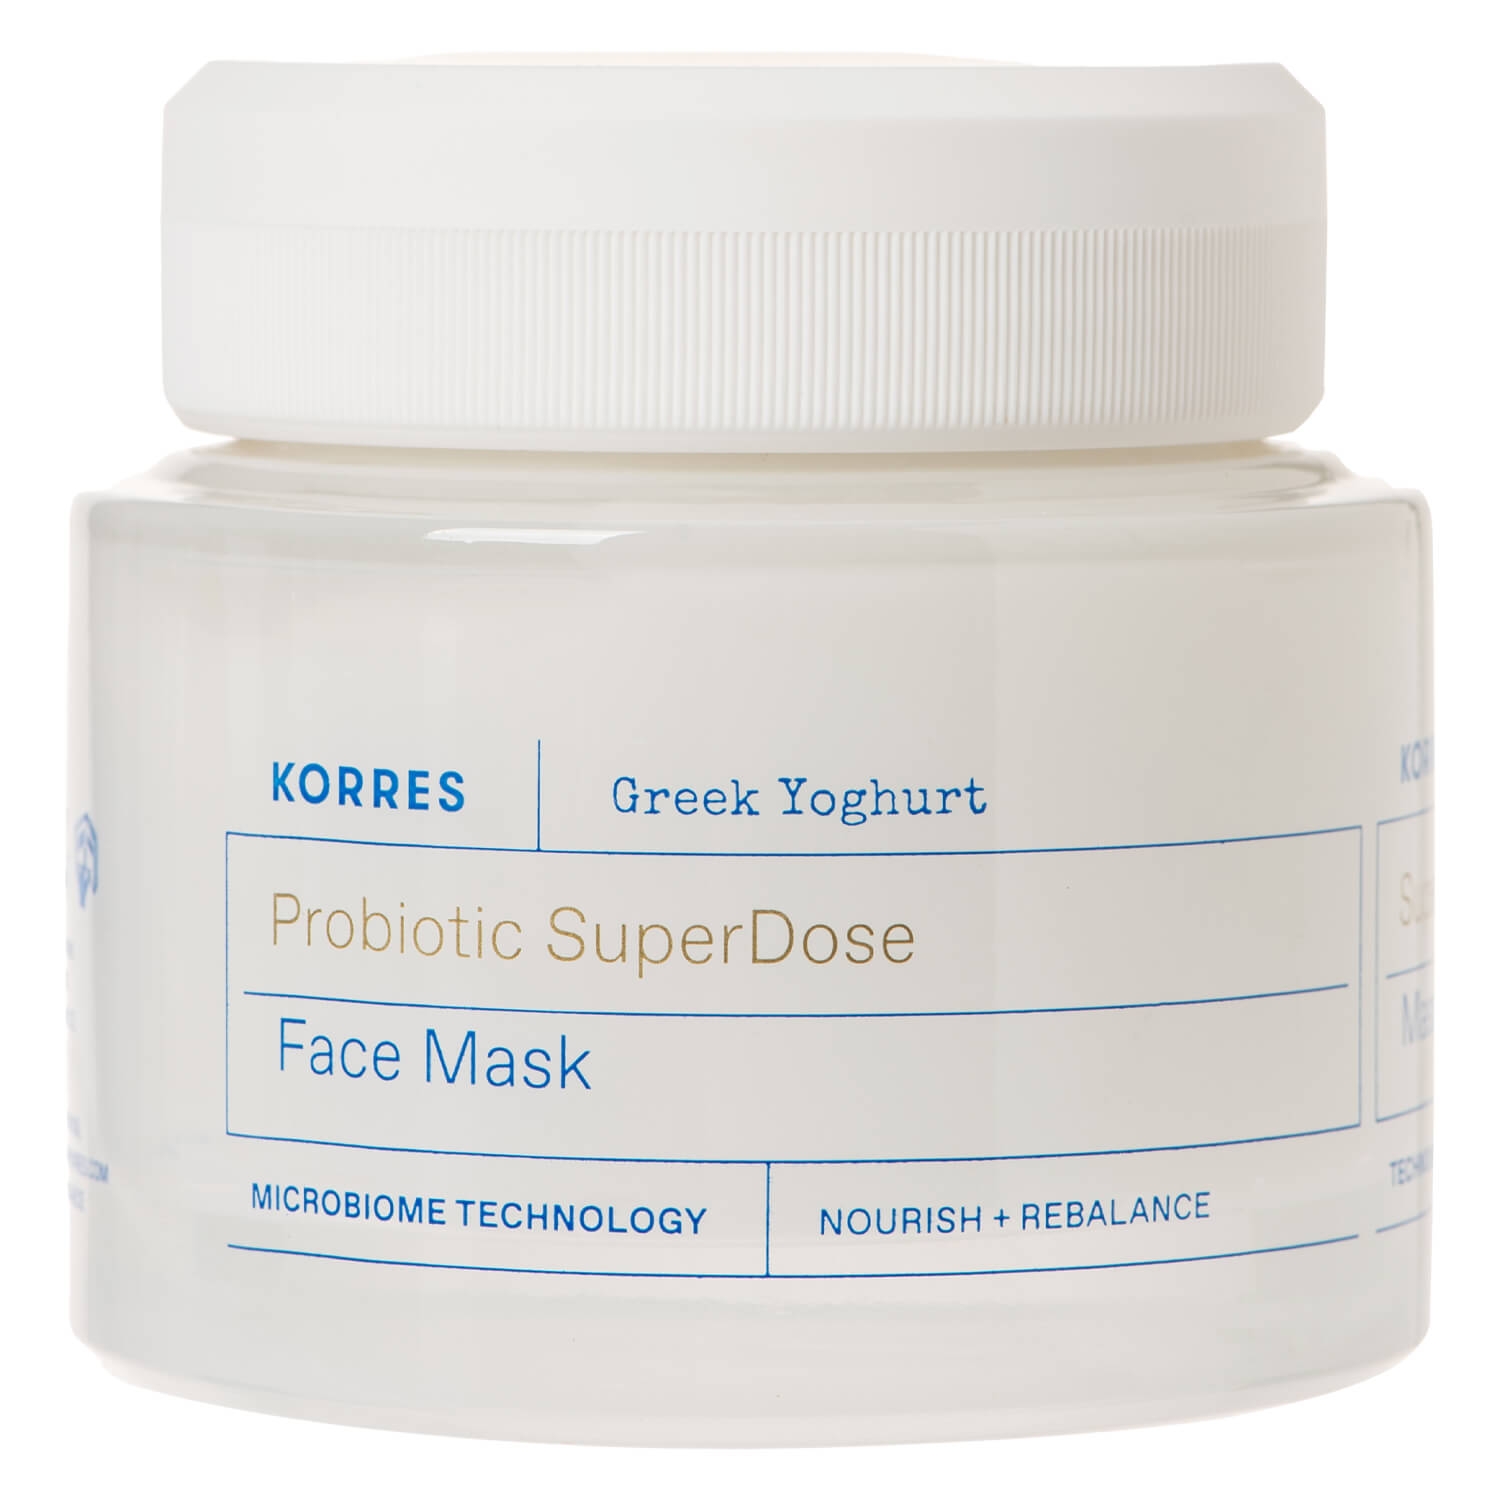 Product image from Korres Care - Greek Yoghurt Probiotic SuperDose Face Mask